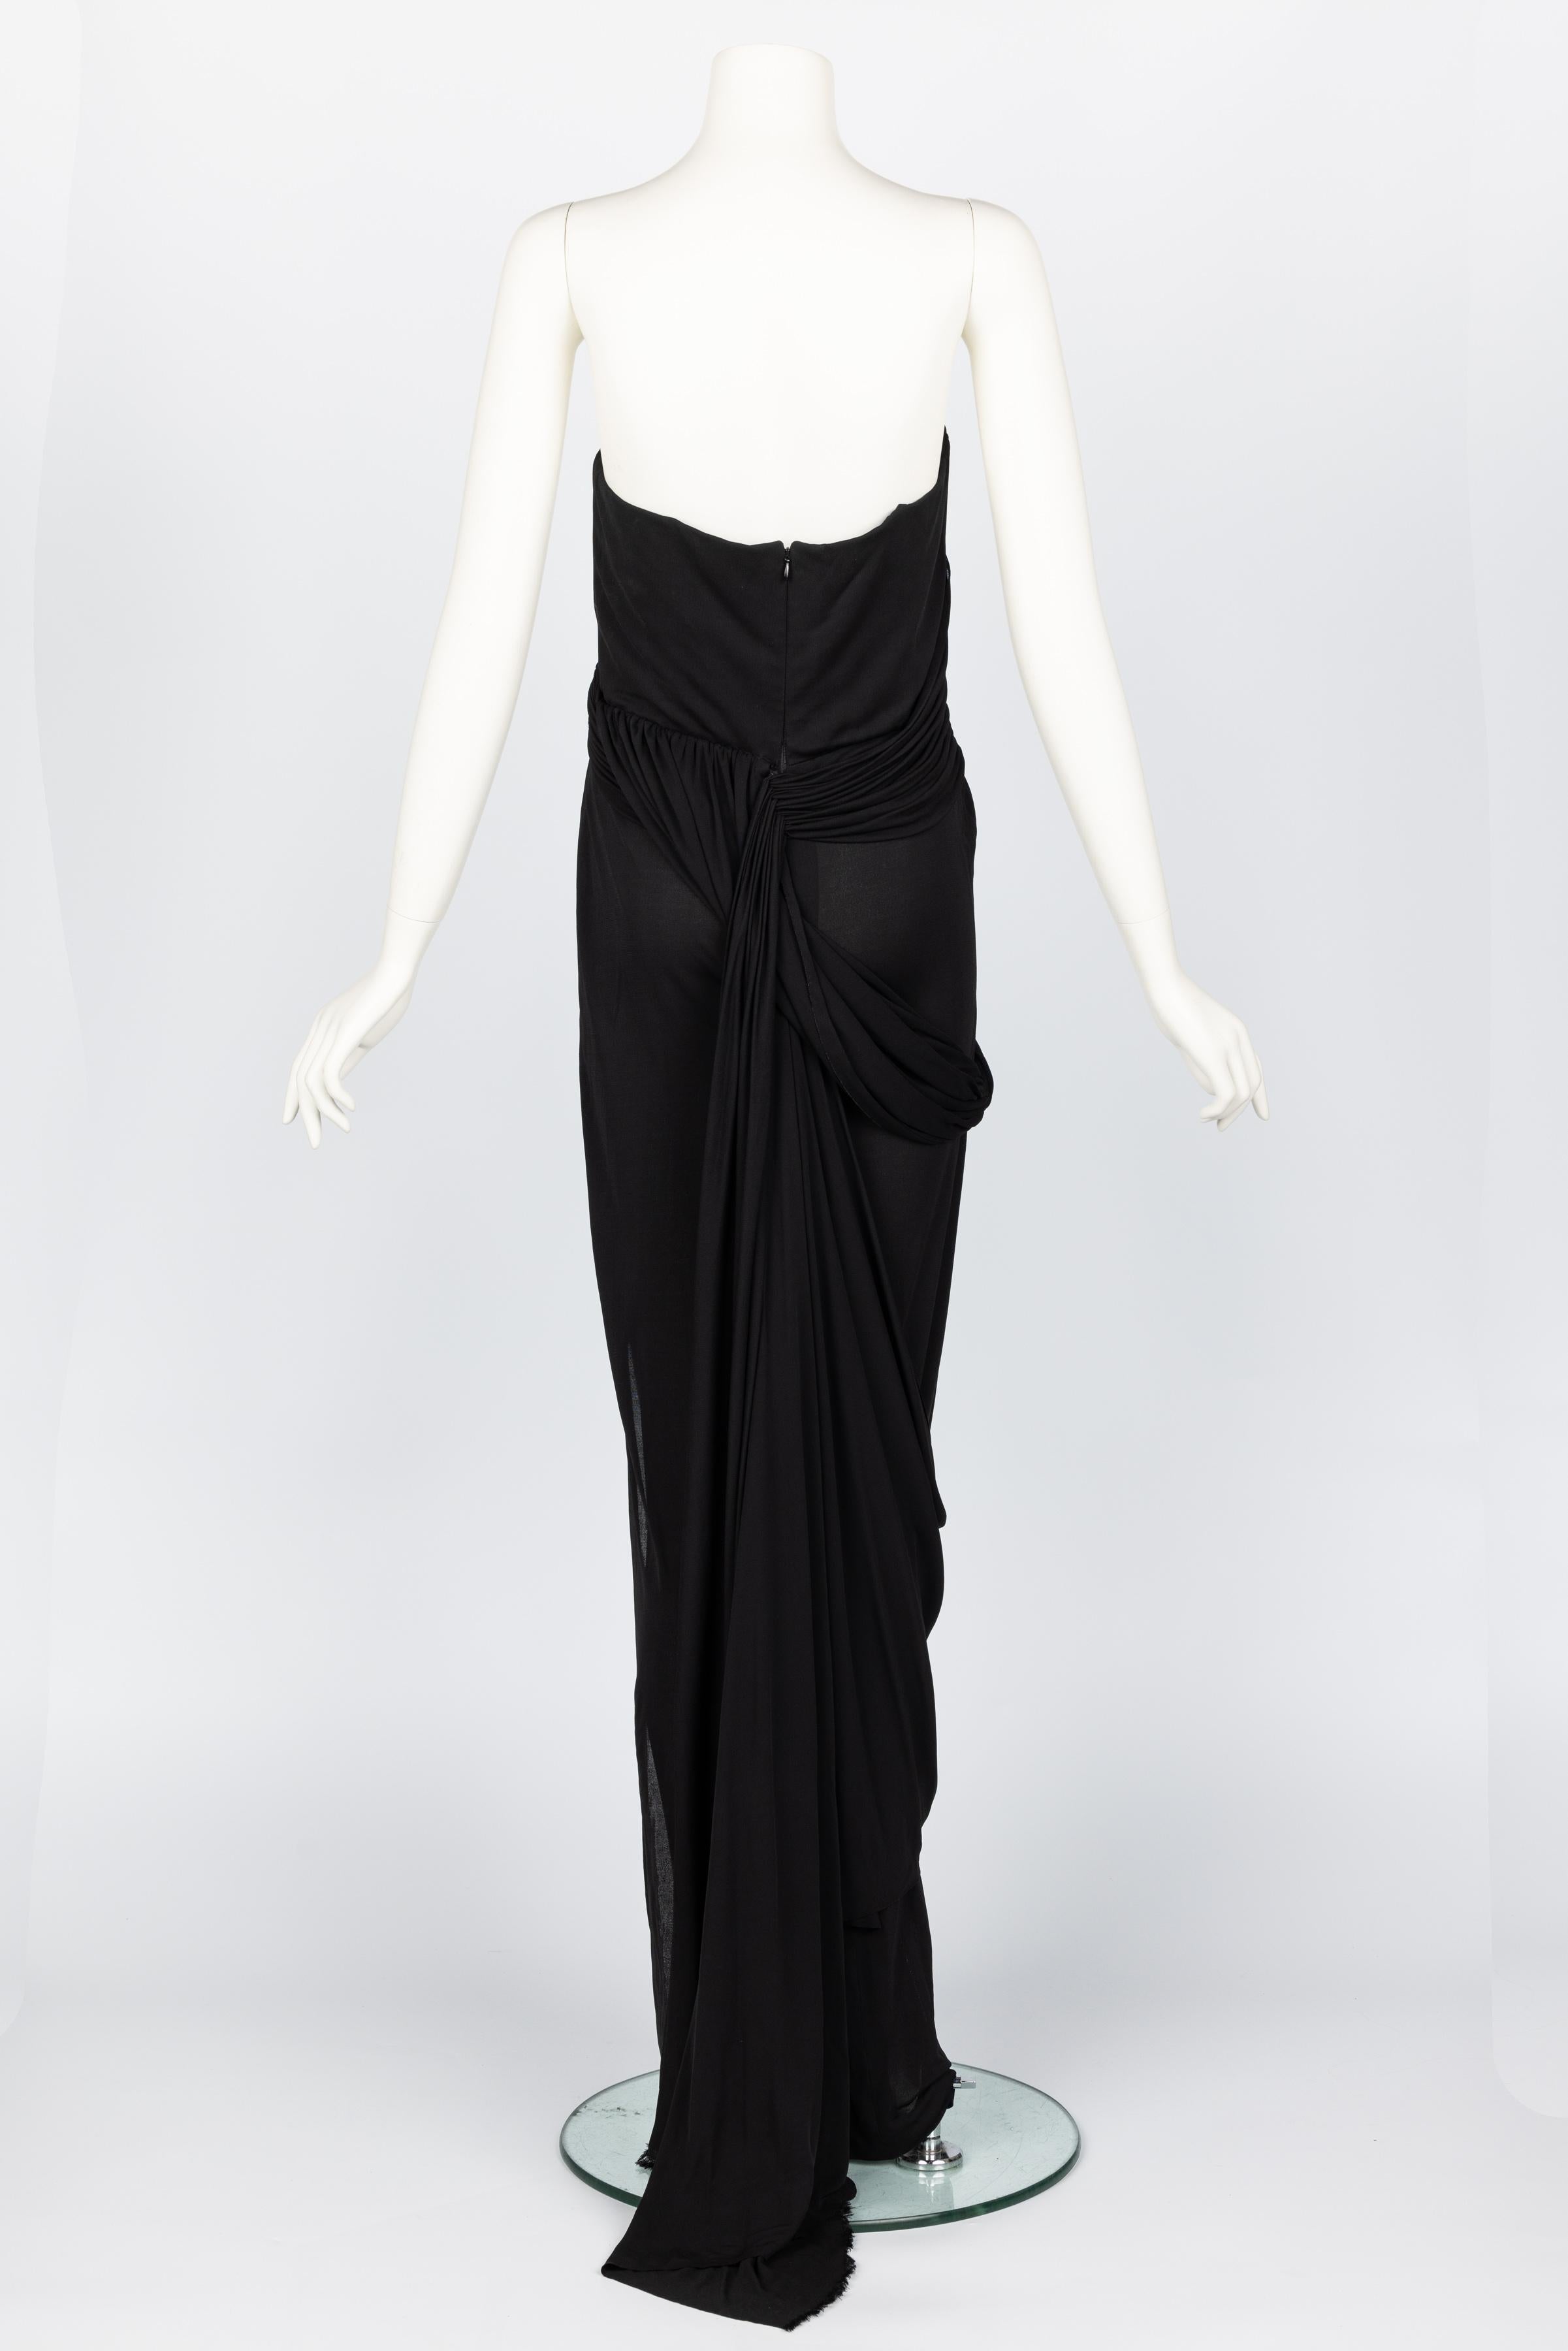 Bill Blass 1970s Black Strapless Draped Maxi Dress For Sale 1